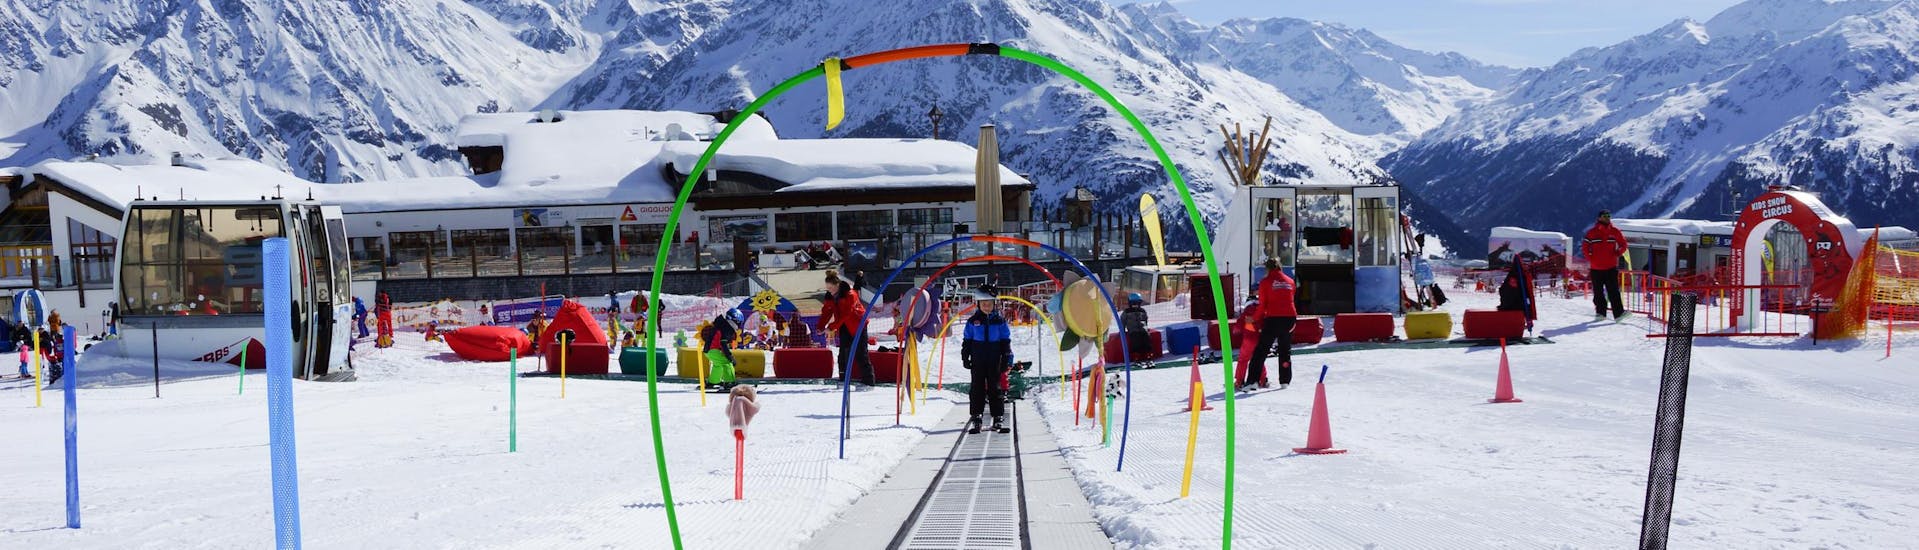 Clases de esquí para niños (9-15 años) de todos los niveles incl. alquiler de esquís.